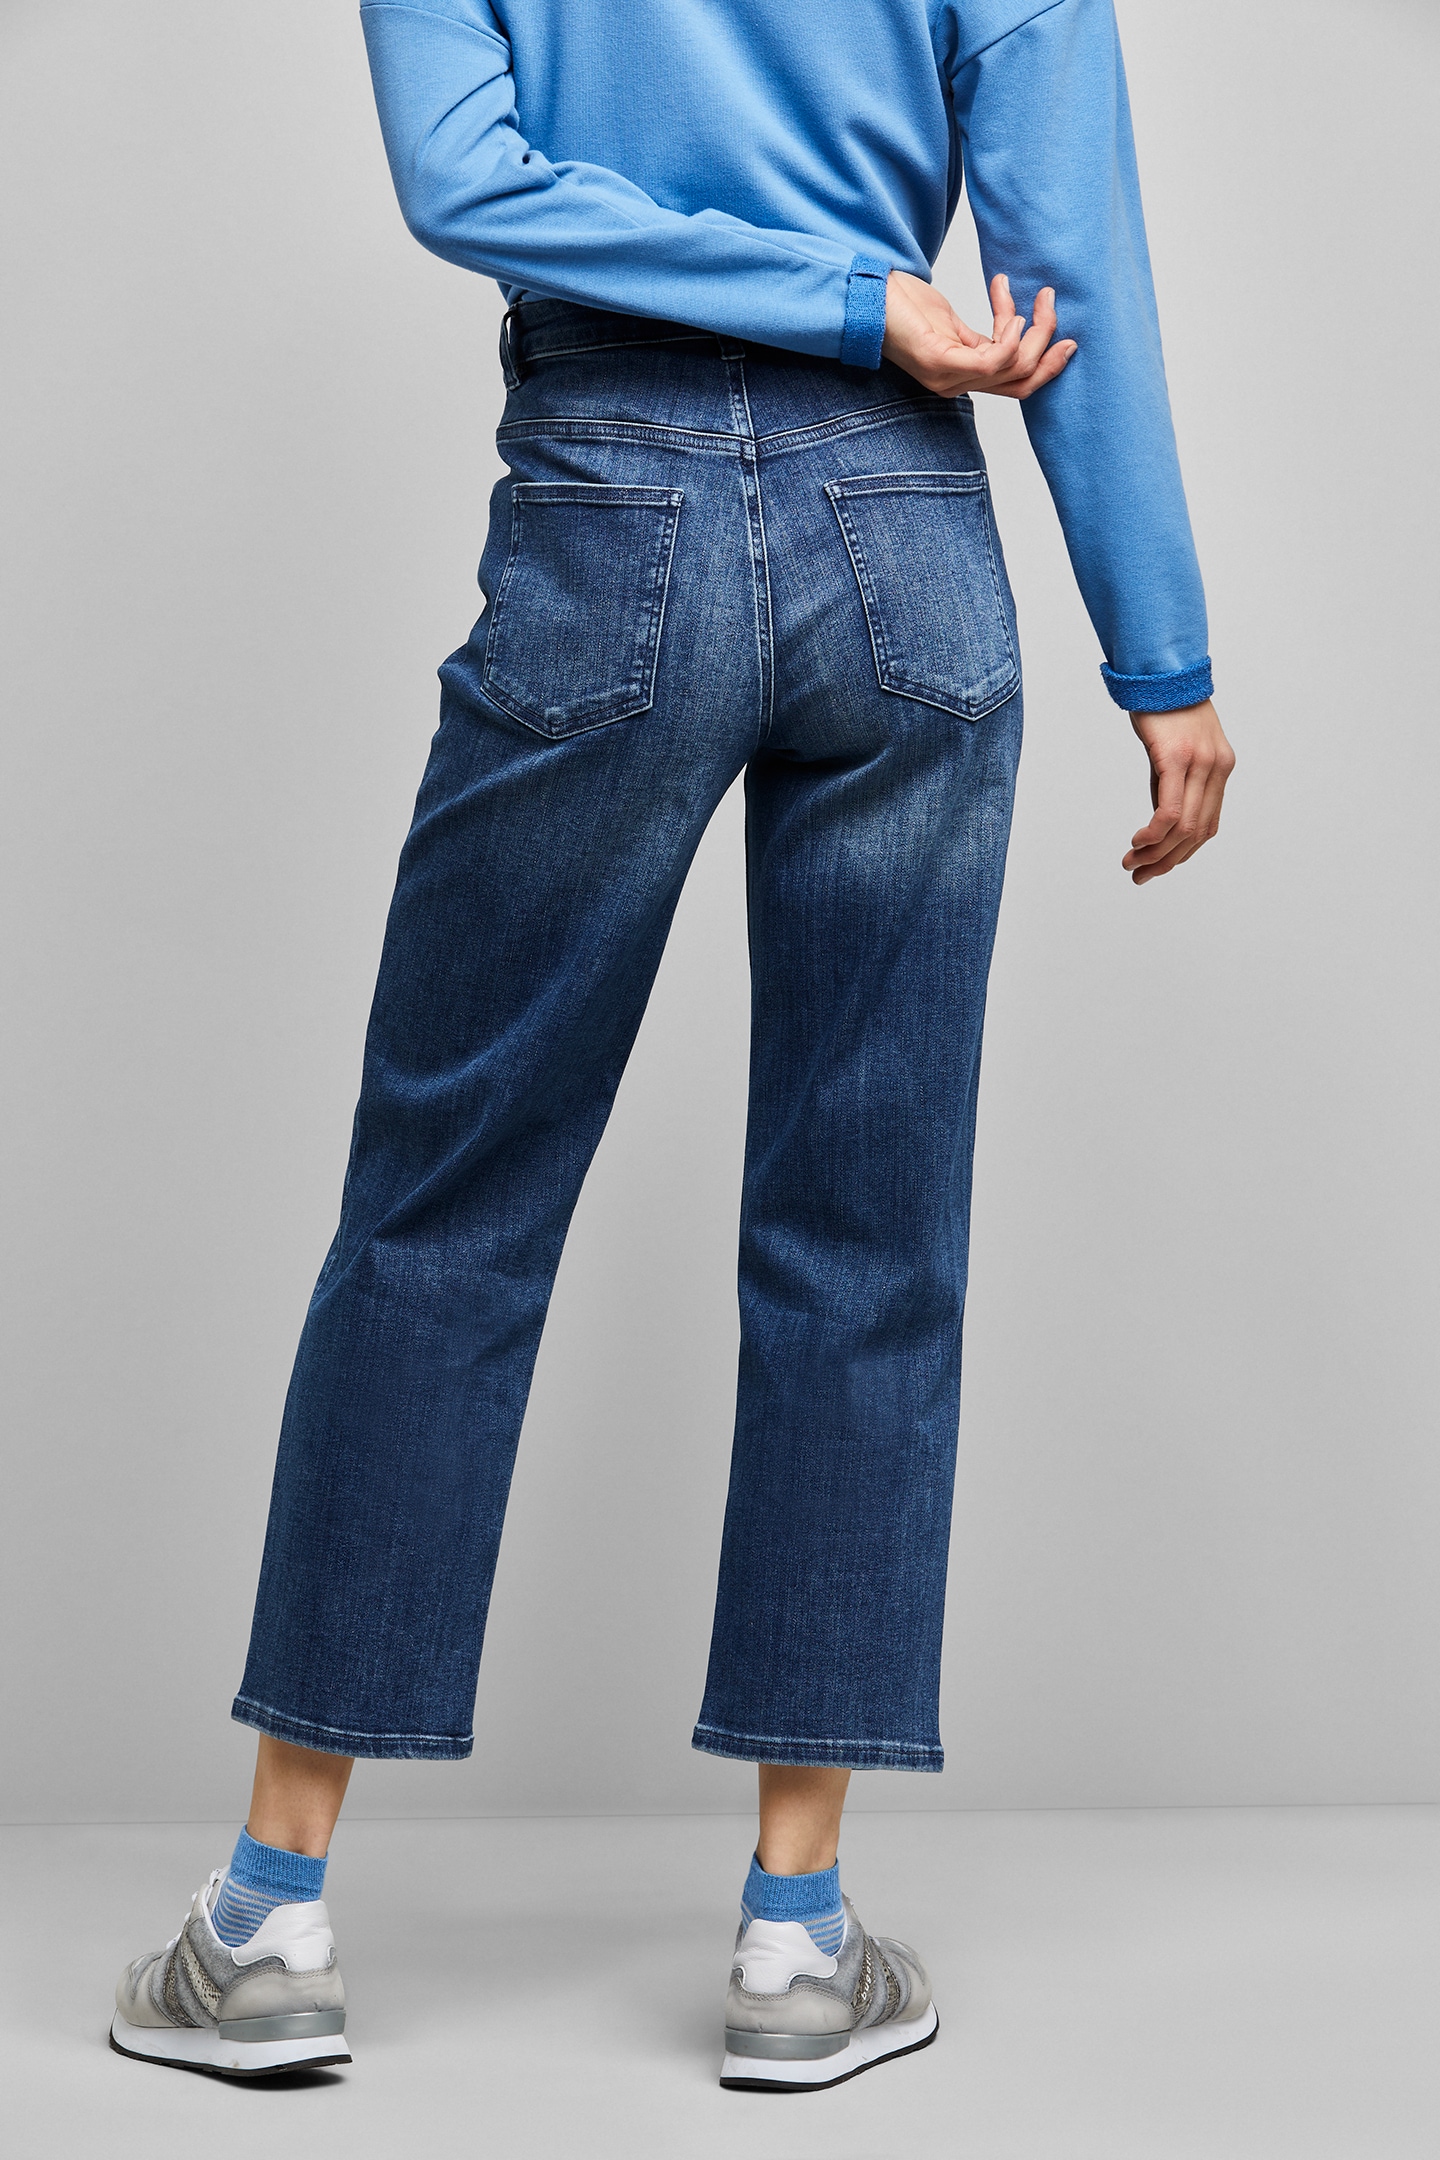 kaufen aus Jelmoli-Versand Fit Baumwollware in online Schweiz 5-Pocket-Jeans, bei bugatti elastischer Relax